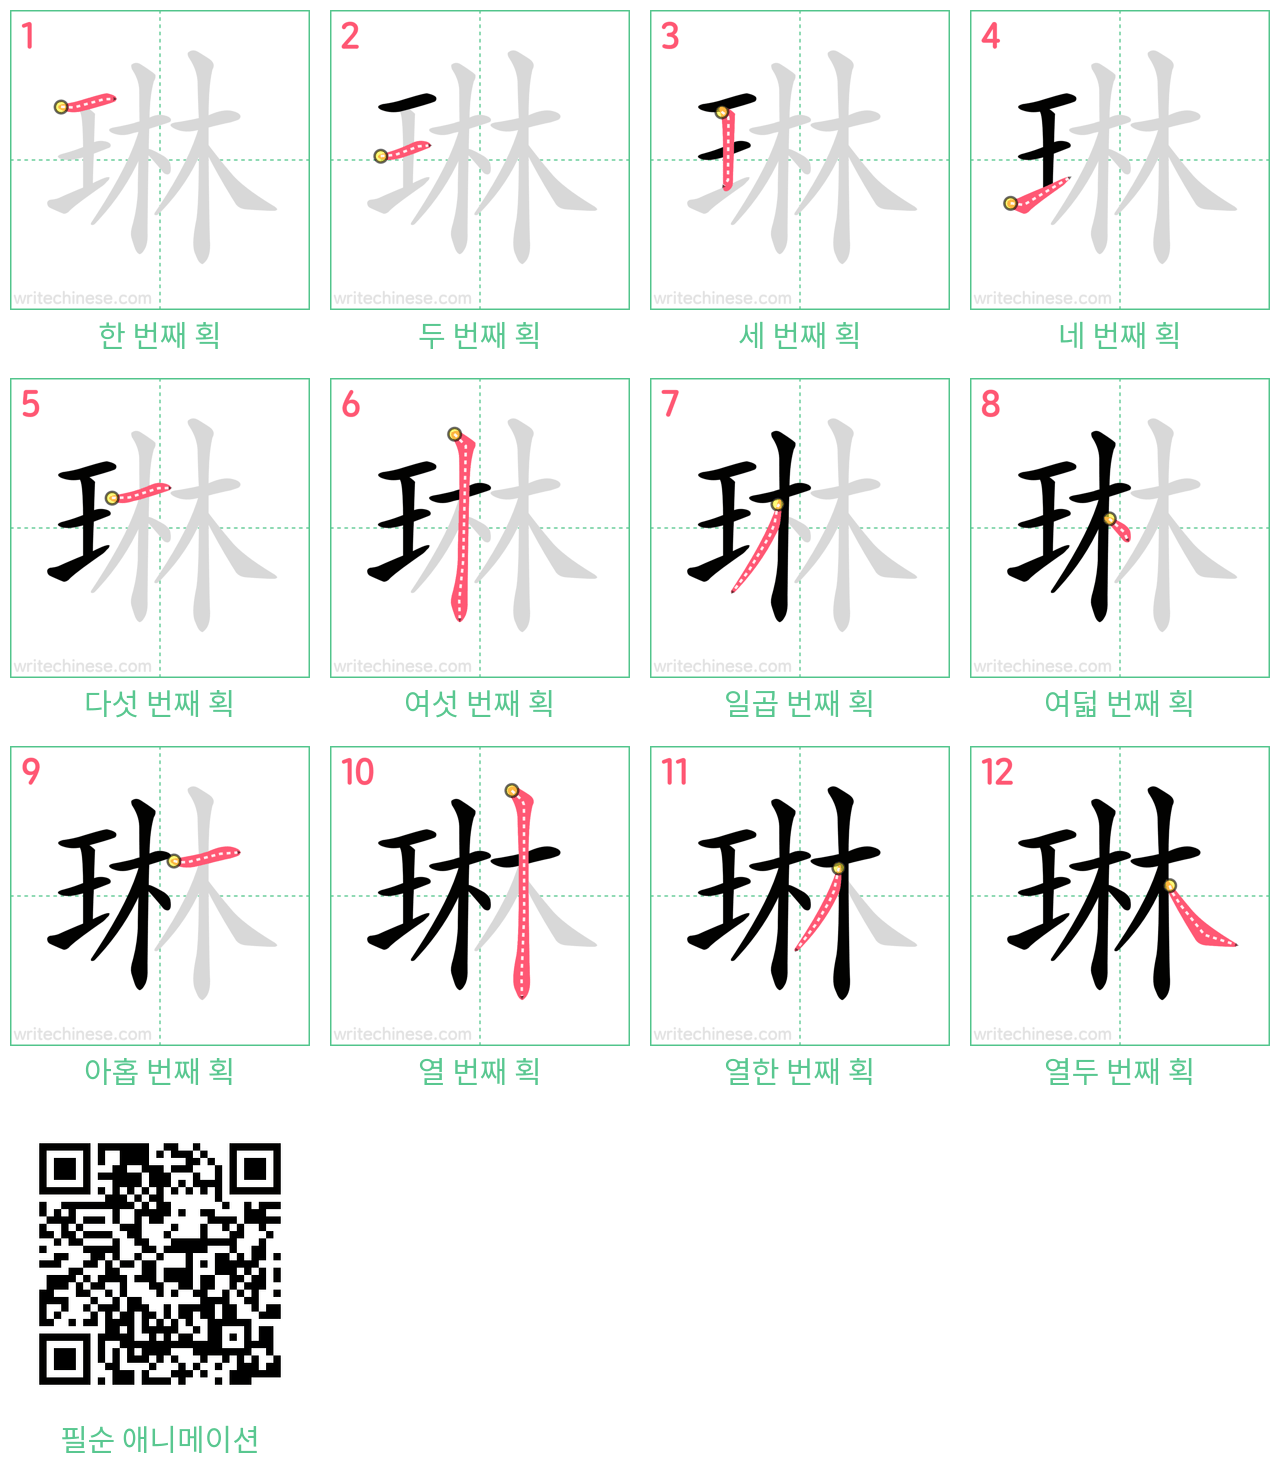 琳 step-by-step stroke order diagrams